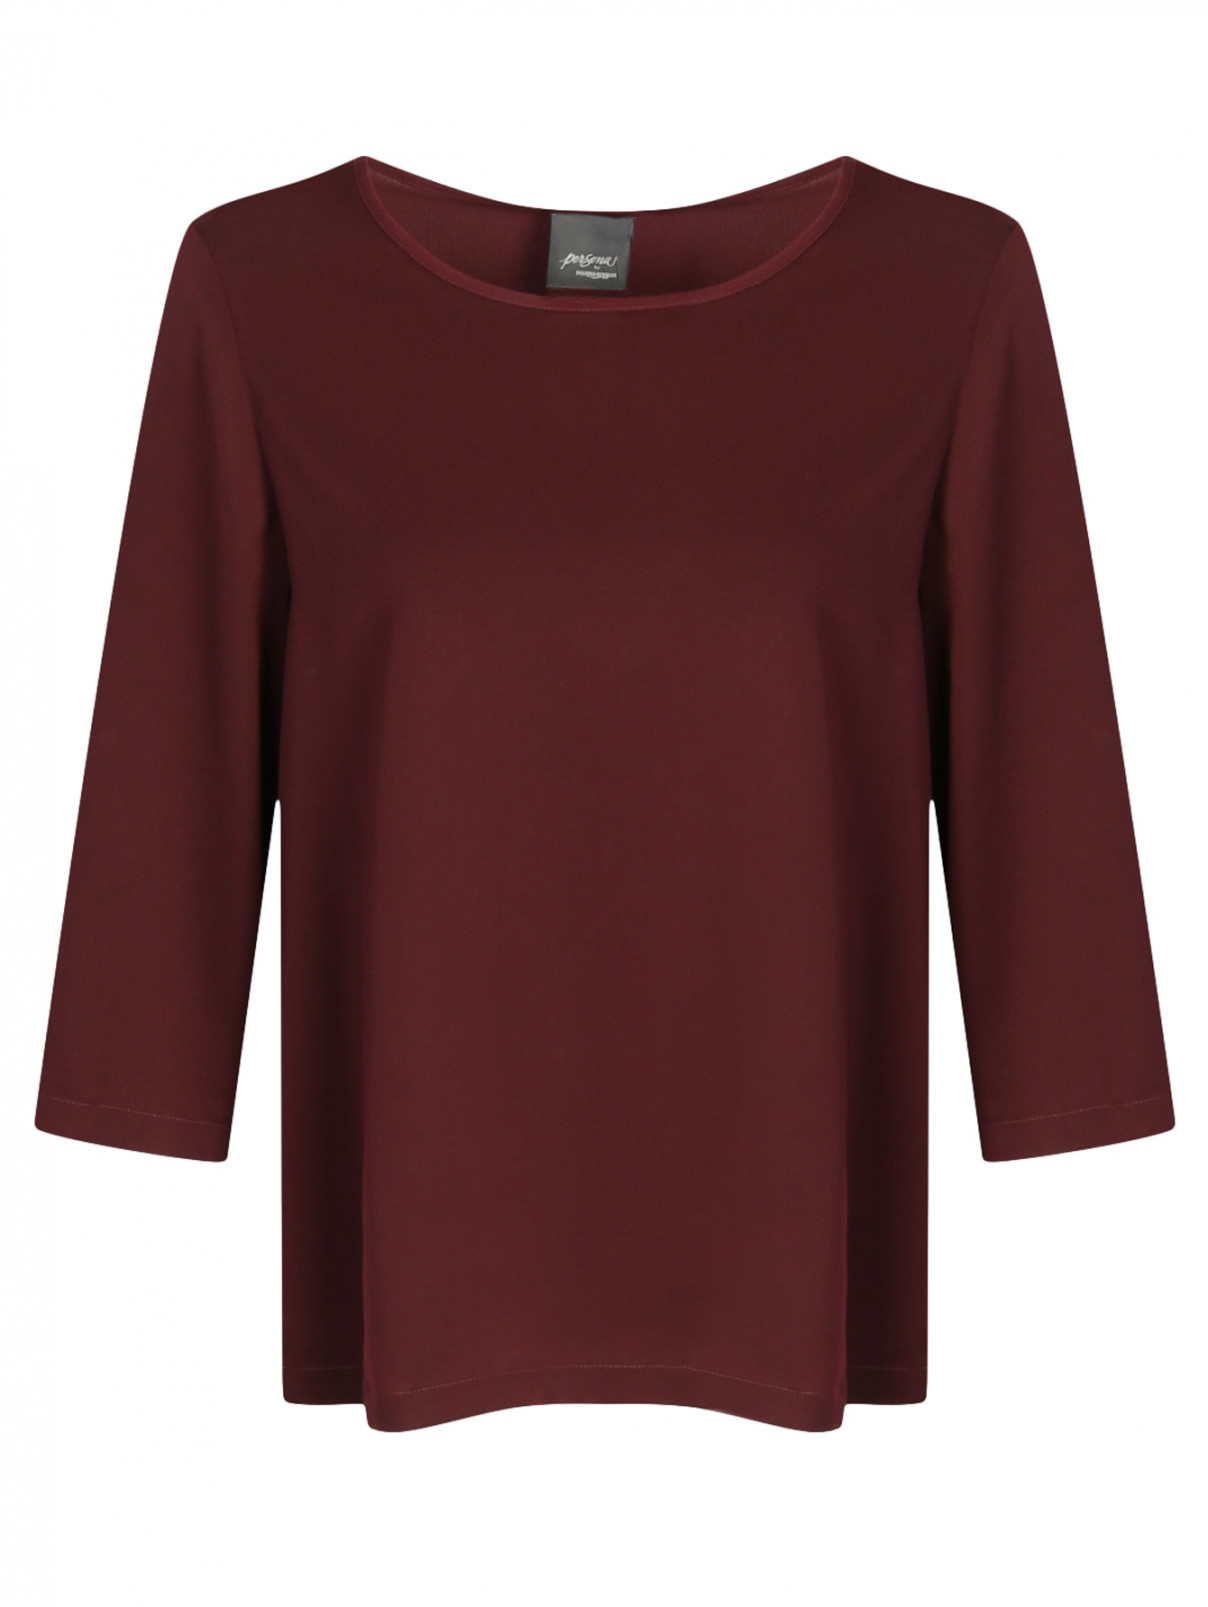 Блуза с рукавами 3/4 Persona by Marina Rinaldi  –  Общий вид  – Цвет:  Красный